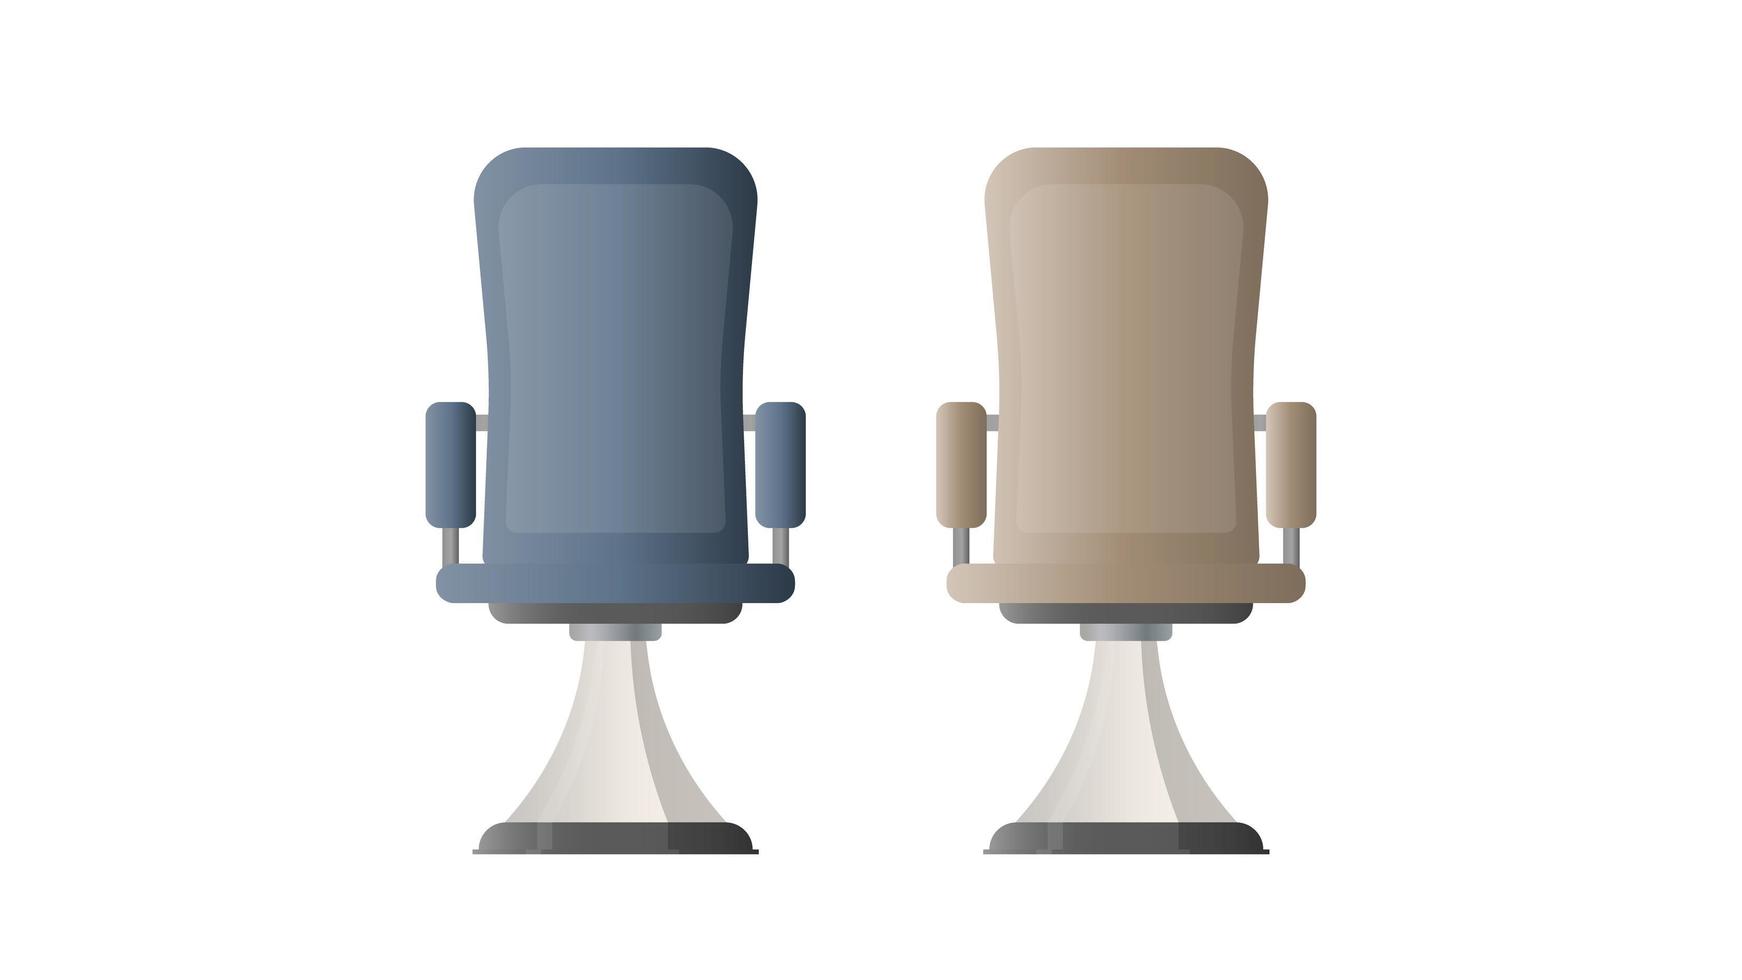 cadeira de escritório. ilustração em vetor de uma cadeira de escritório para um chefe. isolado no fundo branco.